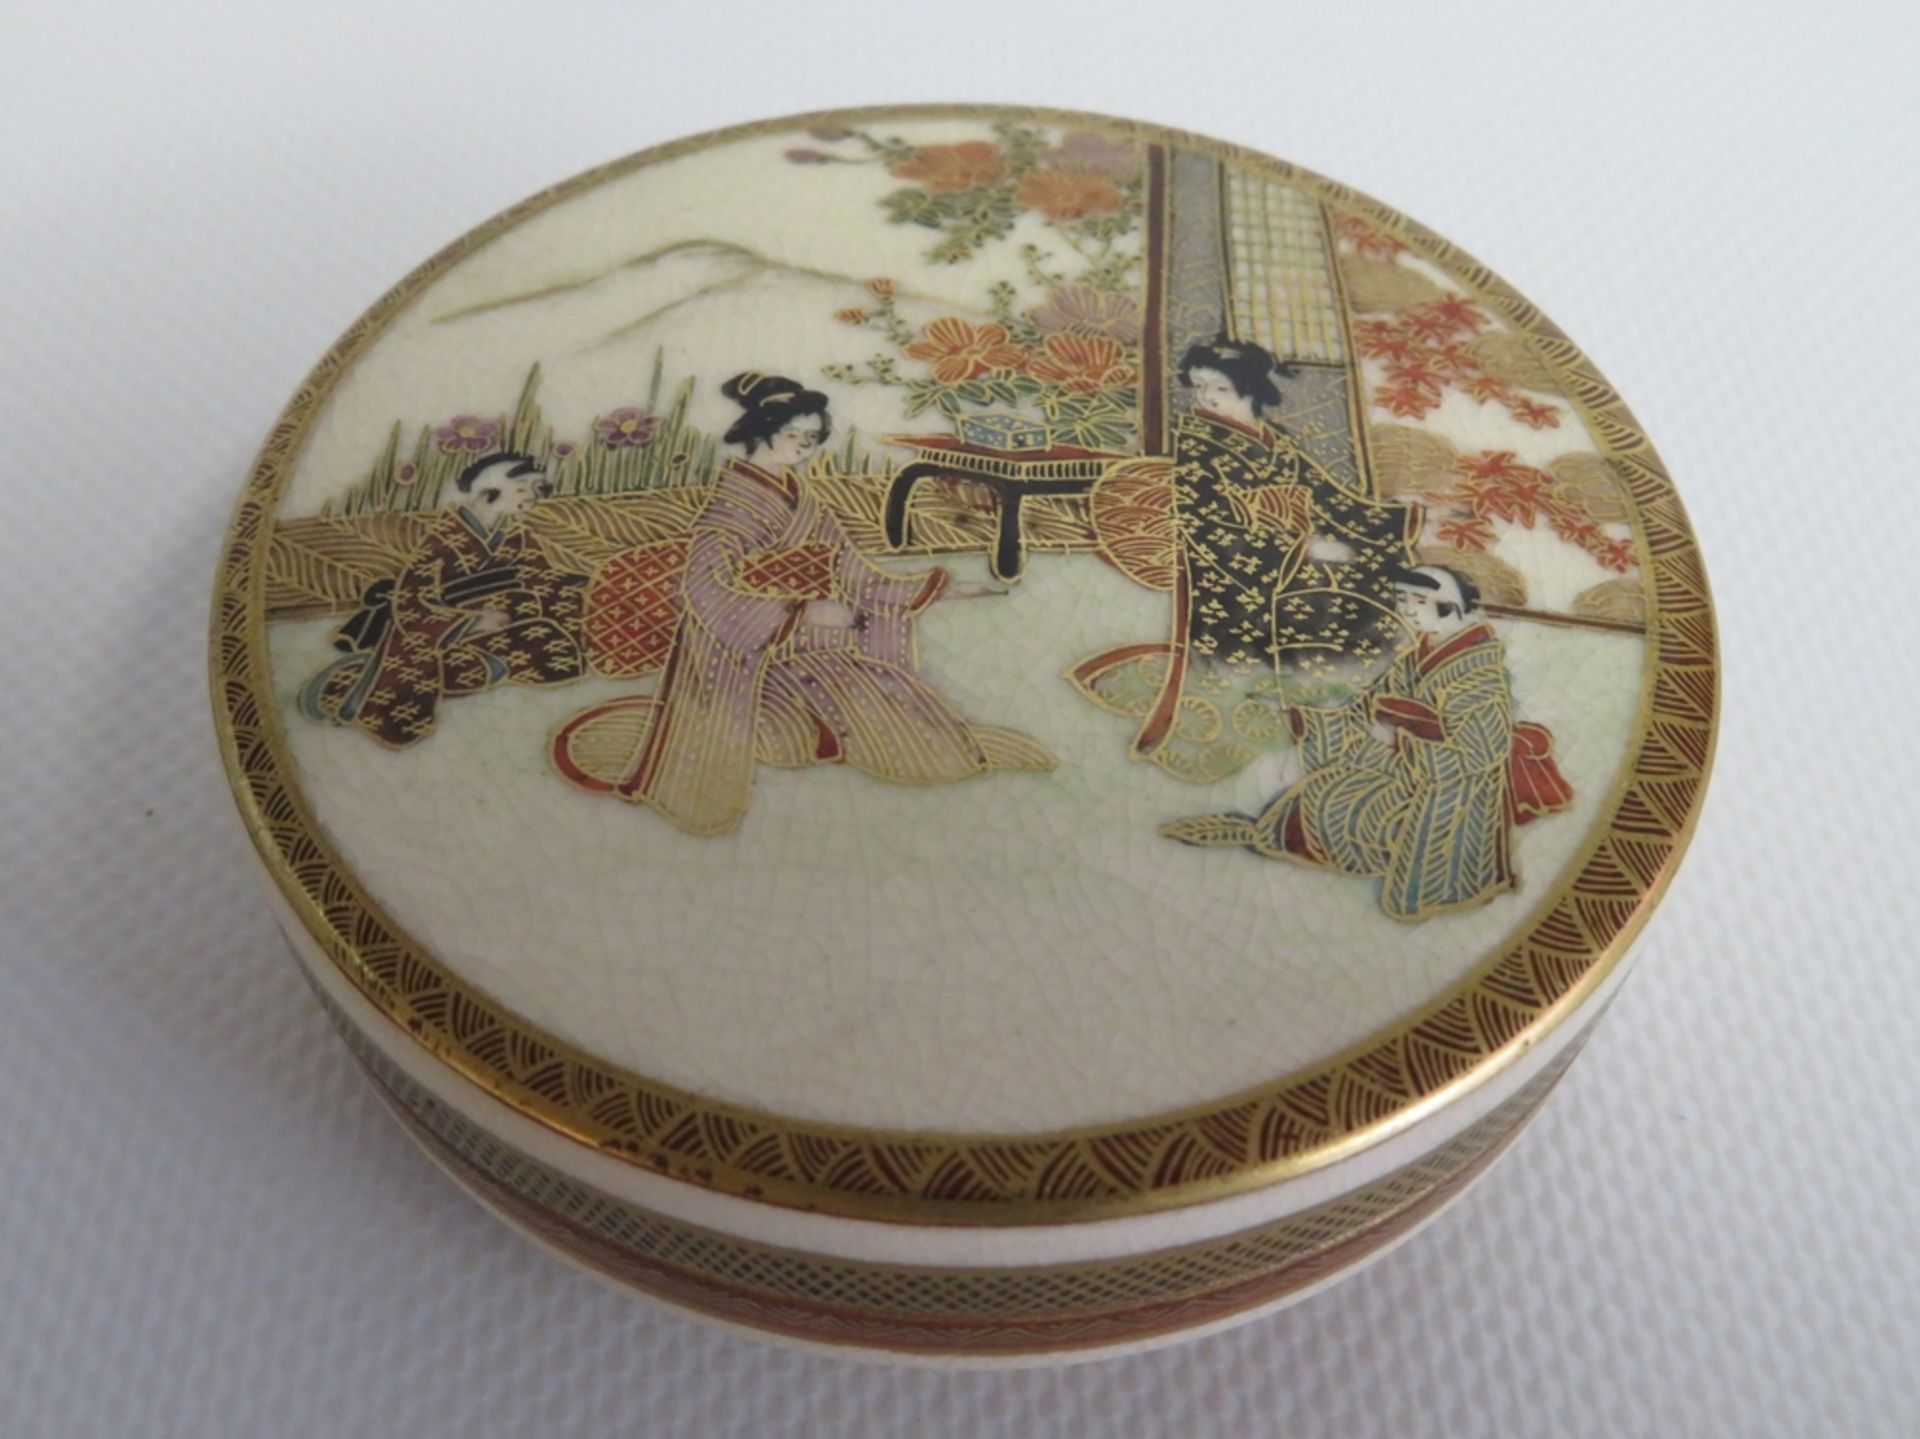 Deckeldose, Japan, Satzuma, Meiji Periode, 1868 - 1912, Porzellan mit feiner farbiger und - Bild 2 aus 4